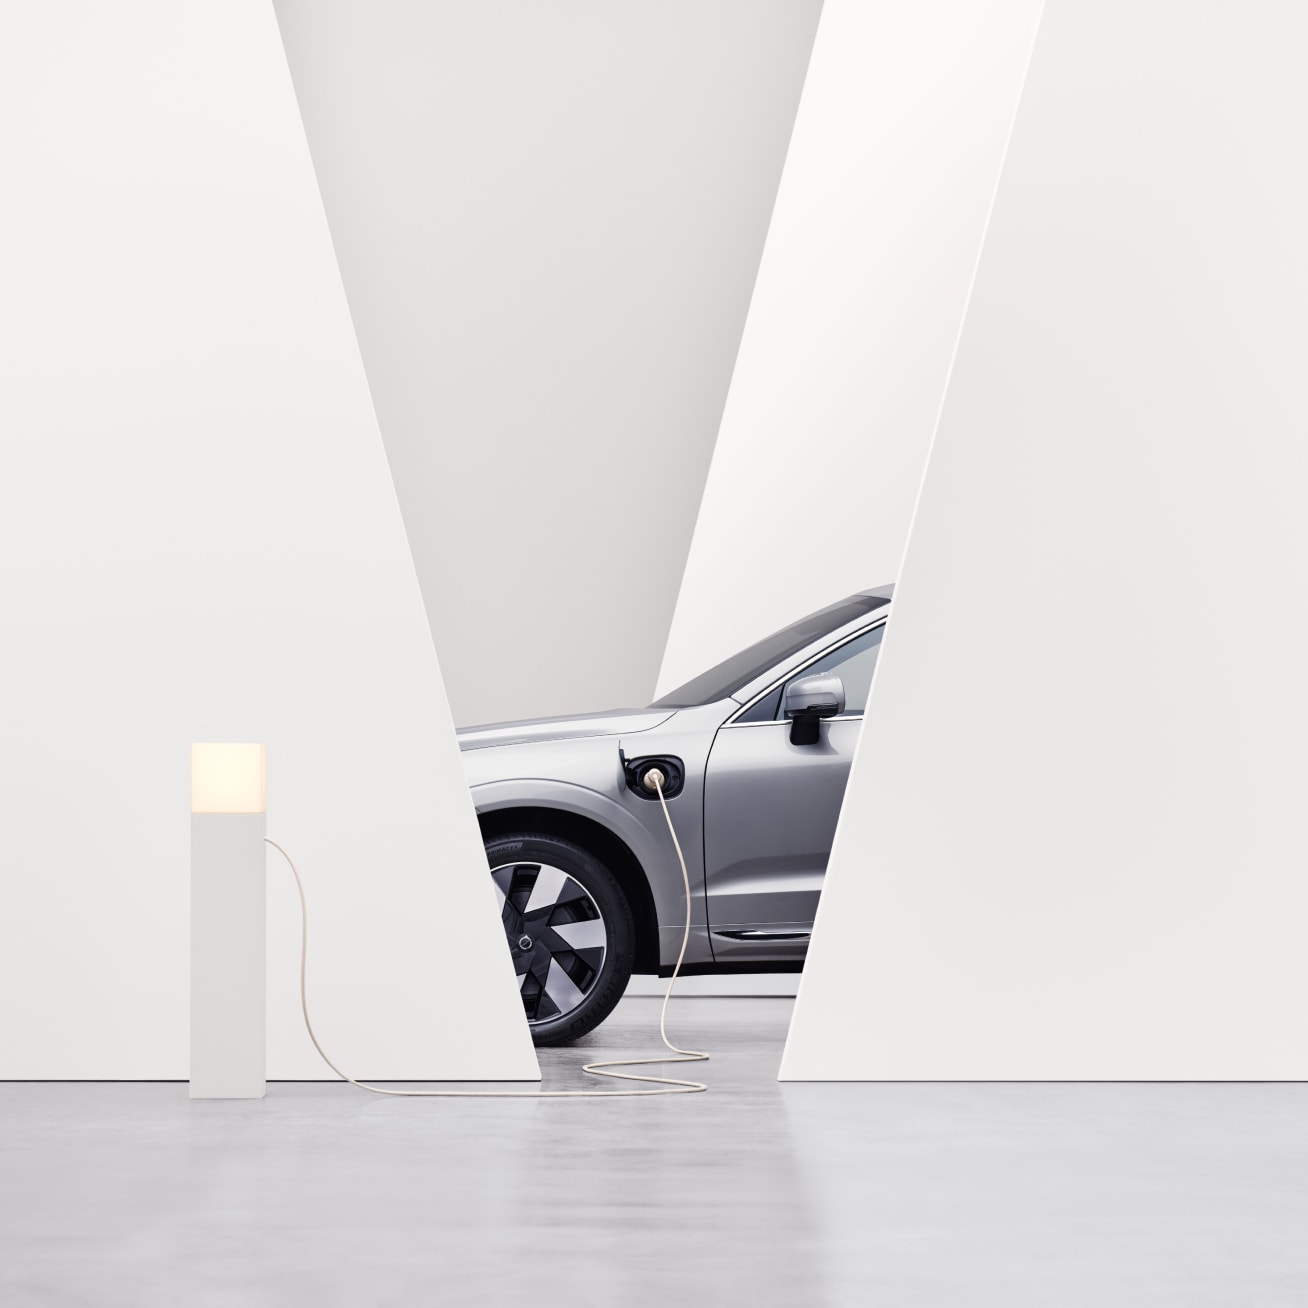 Vista parziale di una Volvo di lato in ricarica presso una colonnina in un ambiente interno bianco